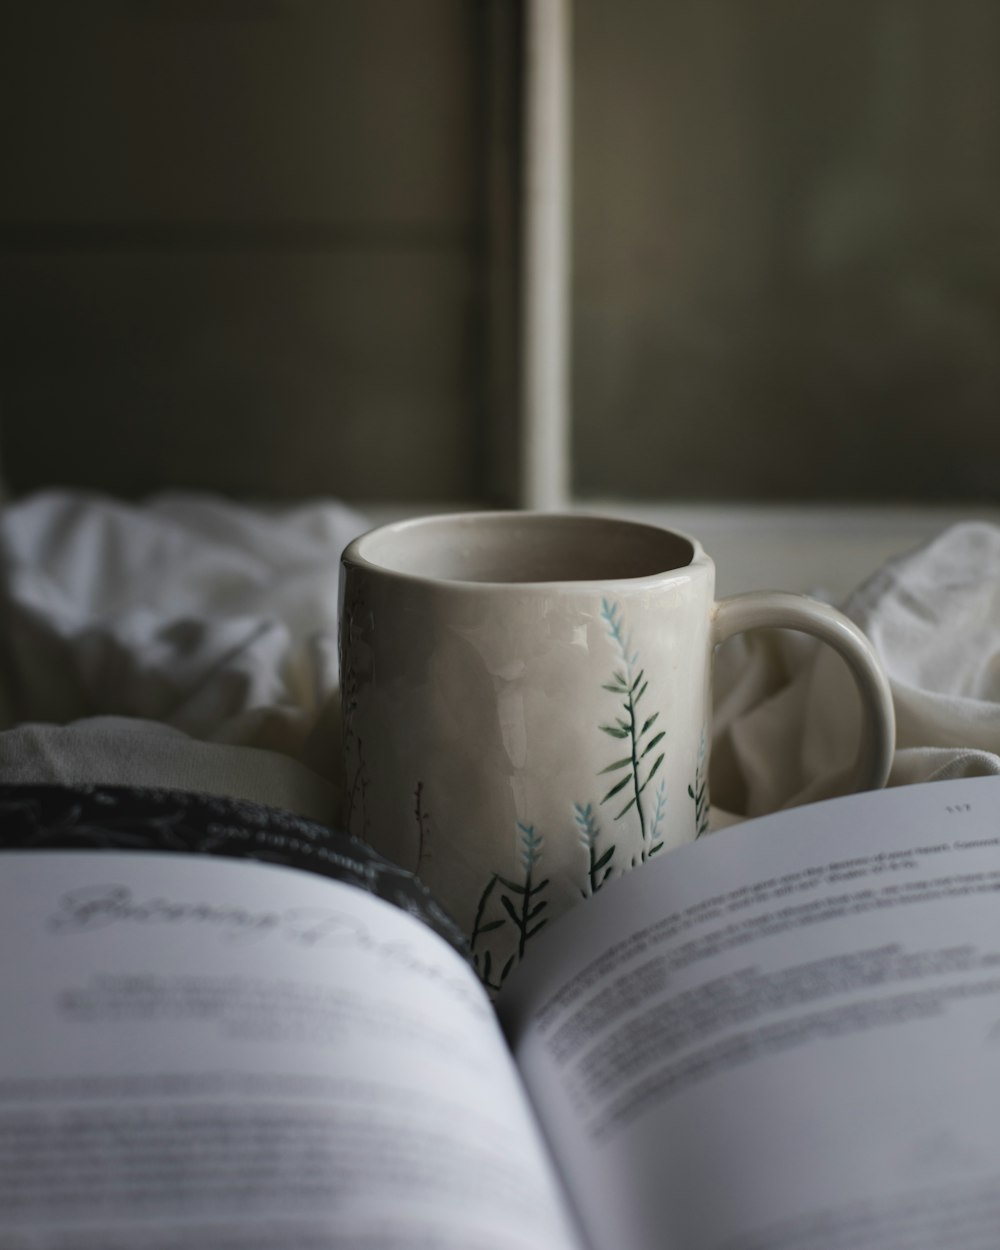 a mug on a book